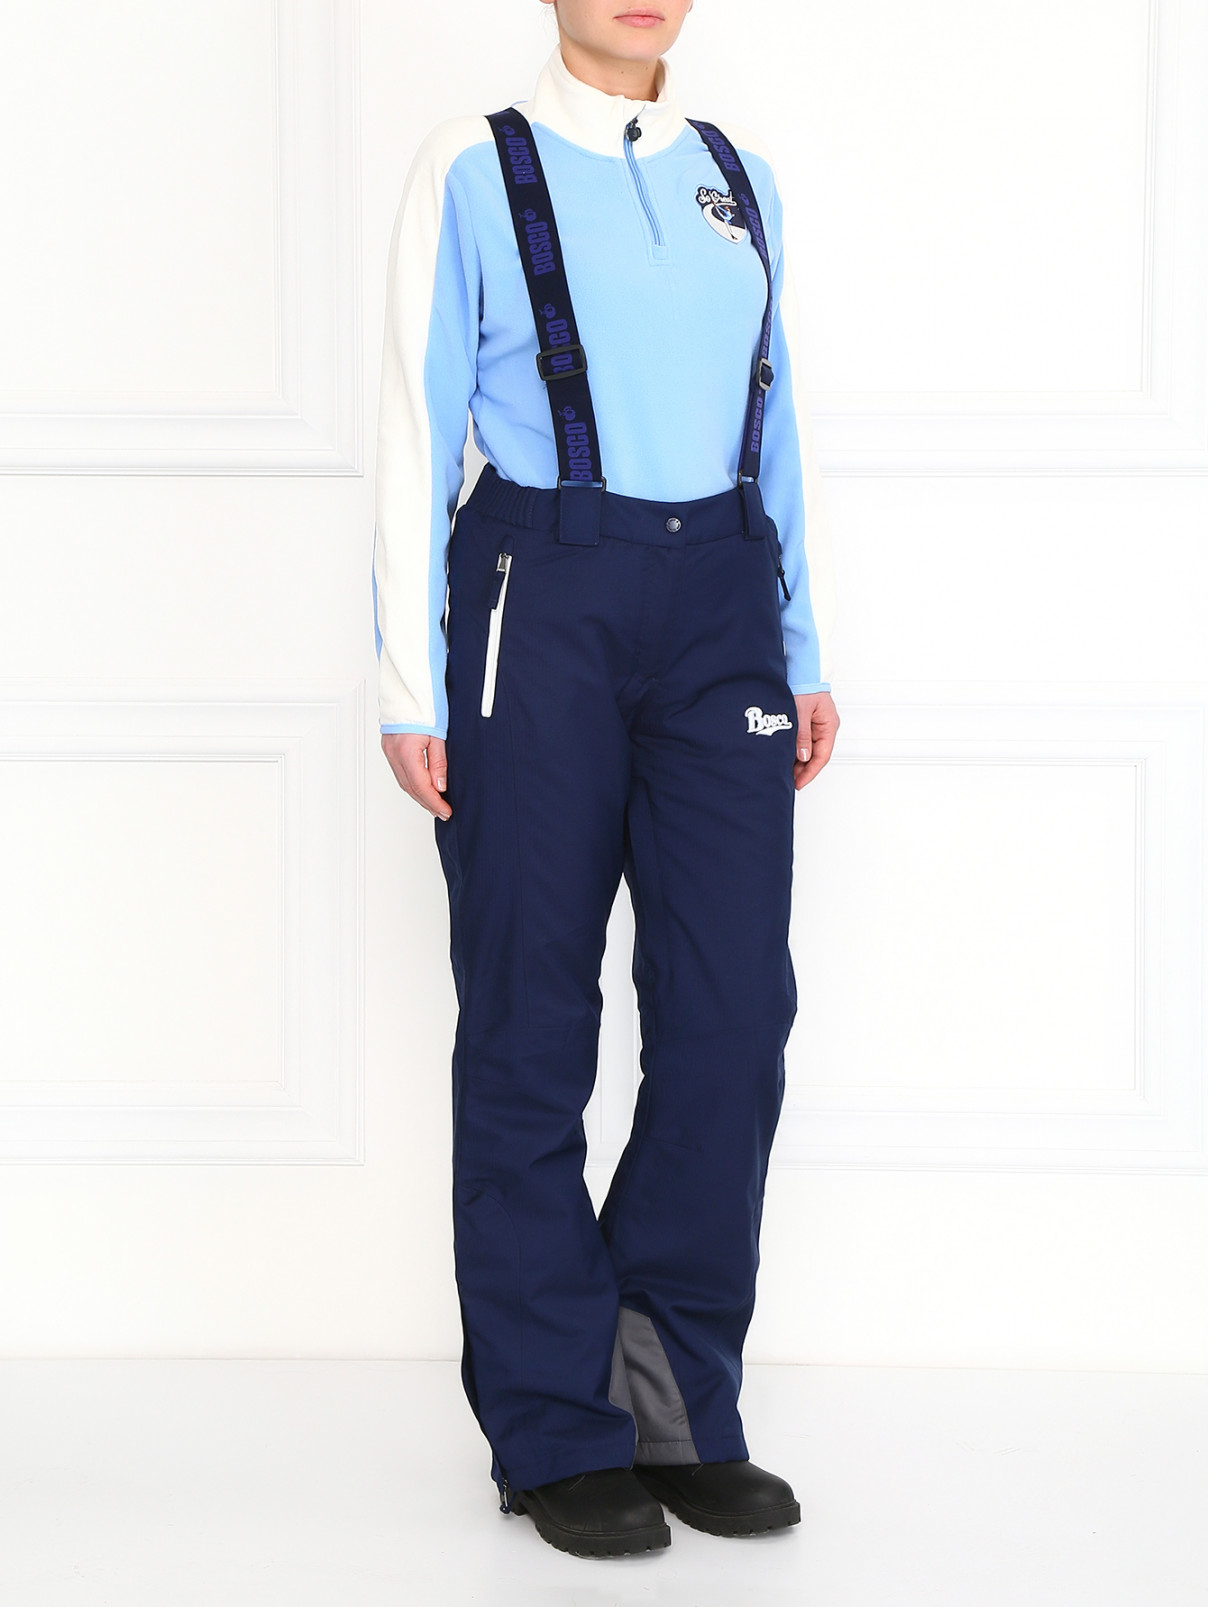 Горнолыжные брюки на лямках BOSCO  –  Модель Общий вид  – Цвет:  Синий